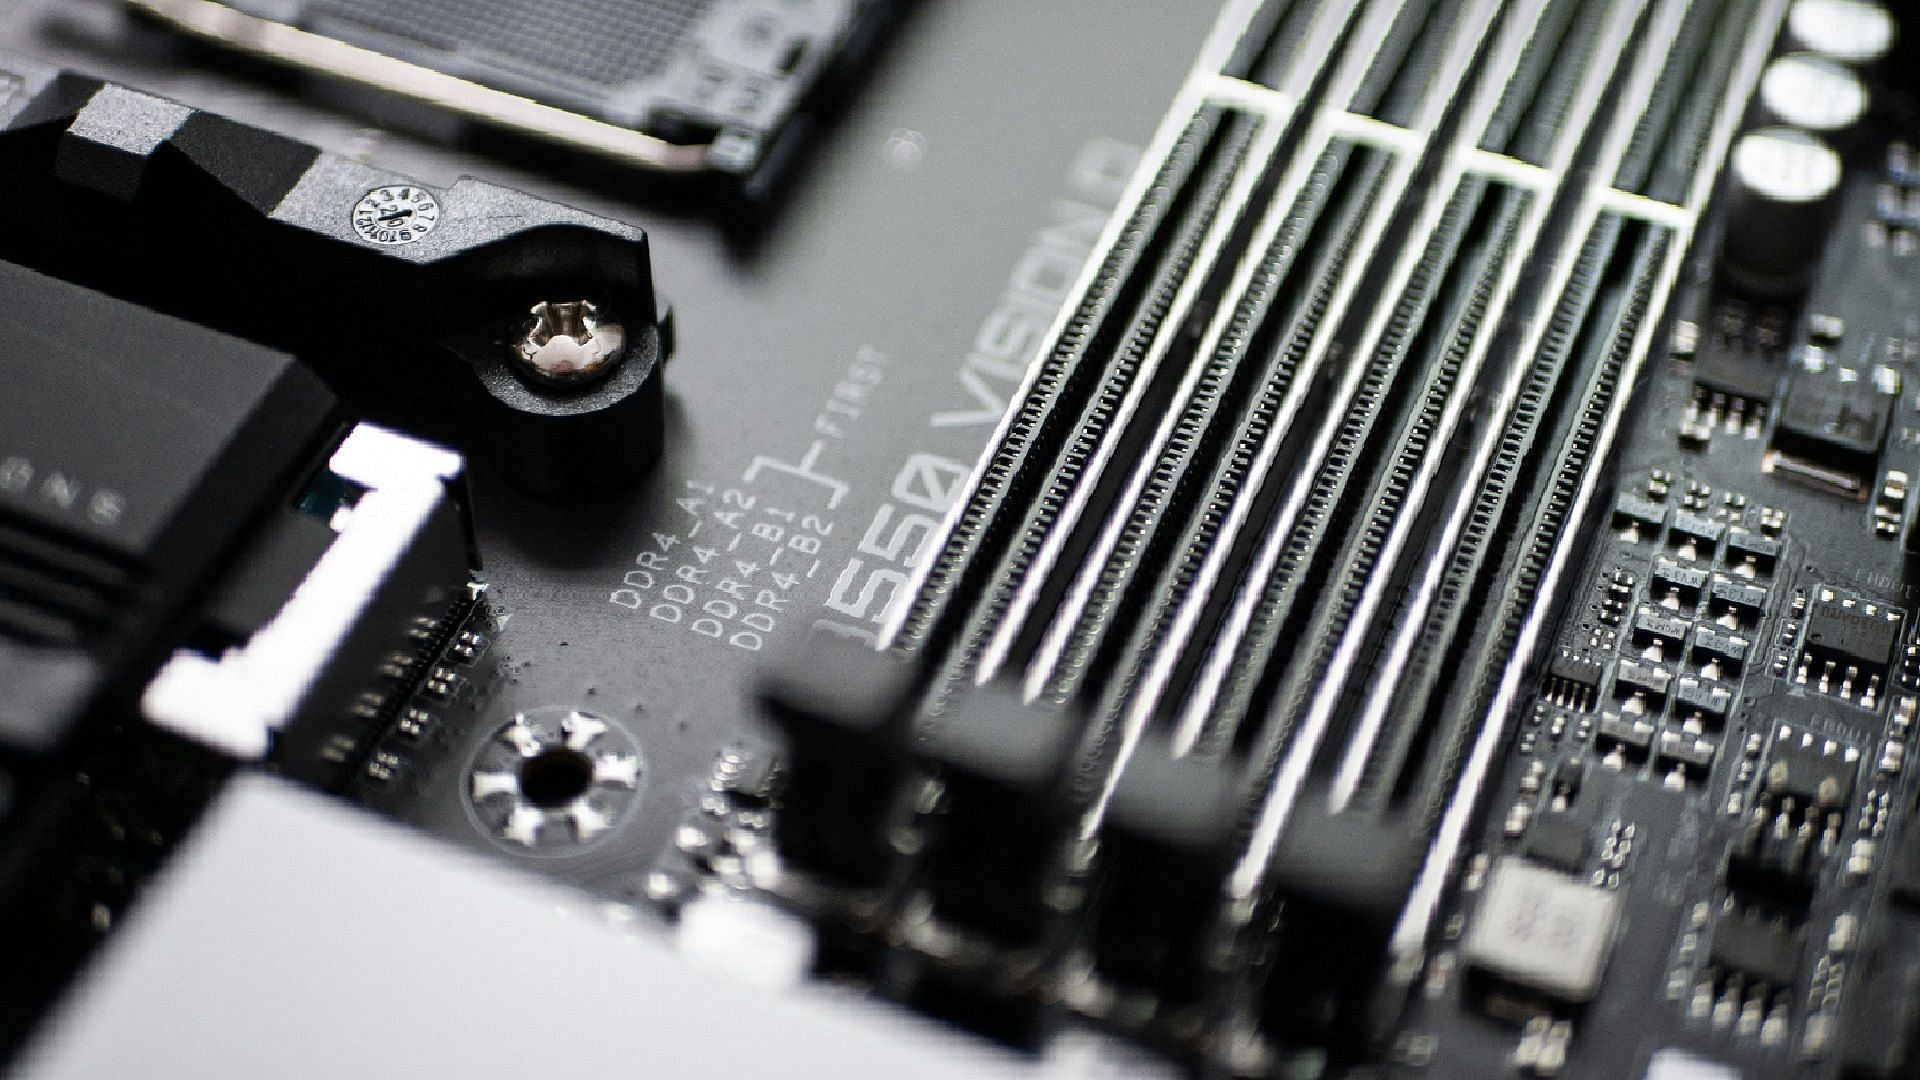 Empty RAM slots on a motherboard (Image via Sven Finger/Unsplash)